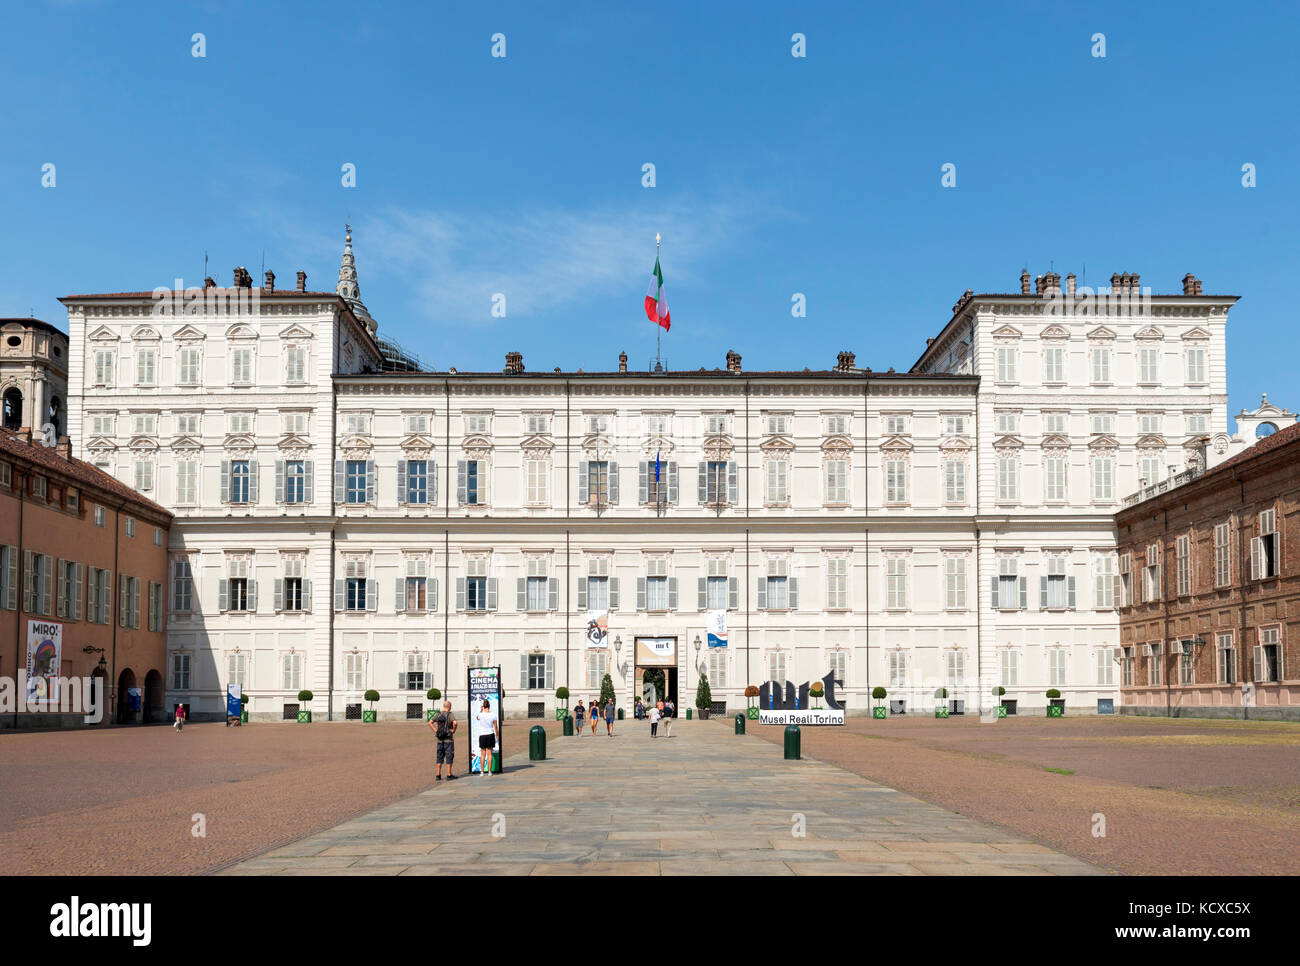 Der Palazzo Reale, das Gehäuse der Galleria Sabauda, Piazza Castello, Turin, Piemont, Italien Stockfoto